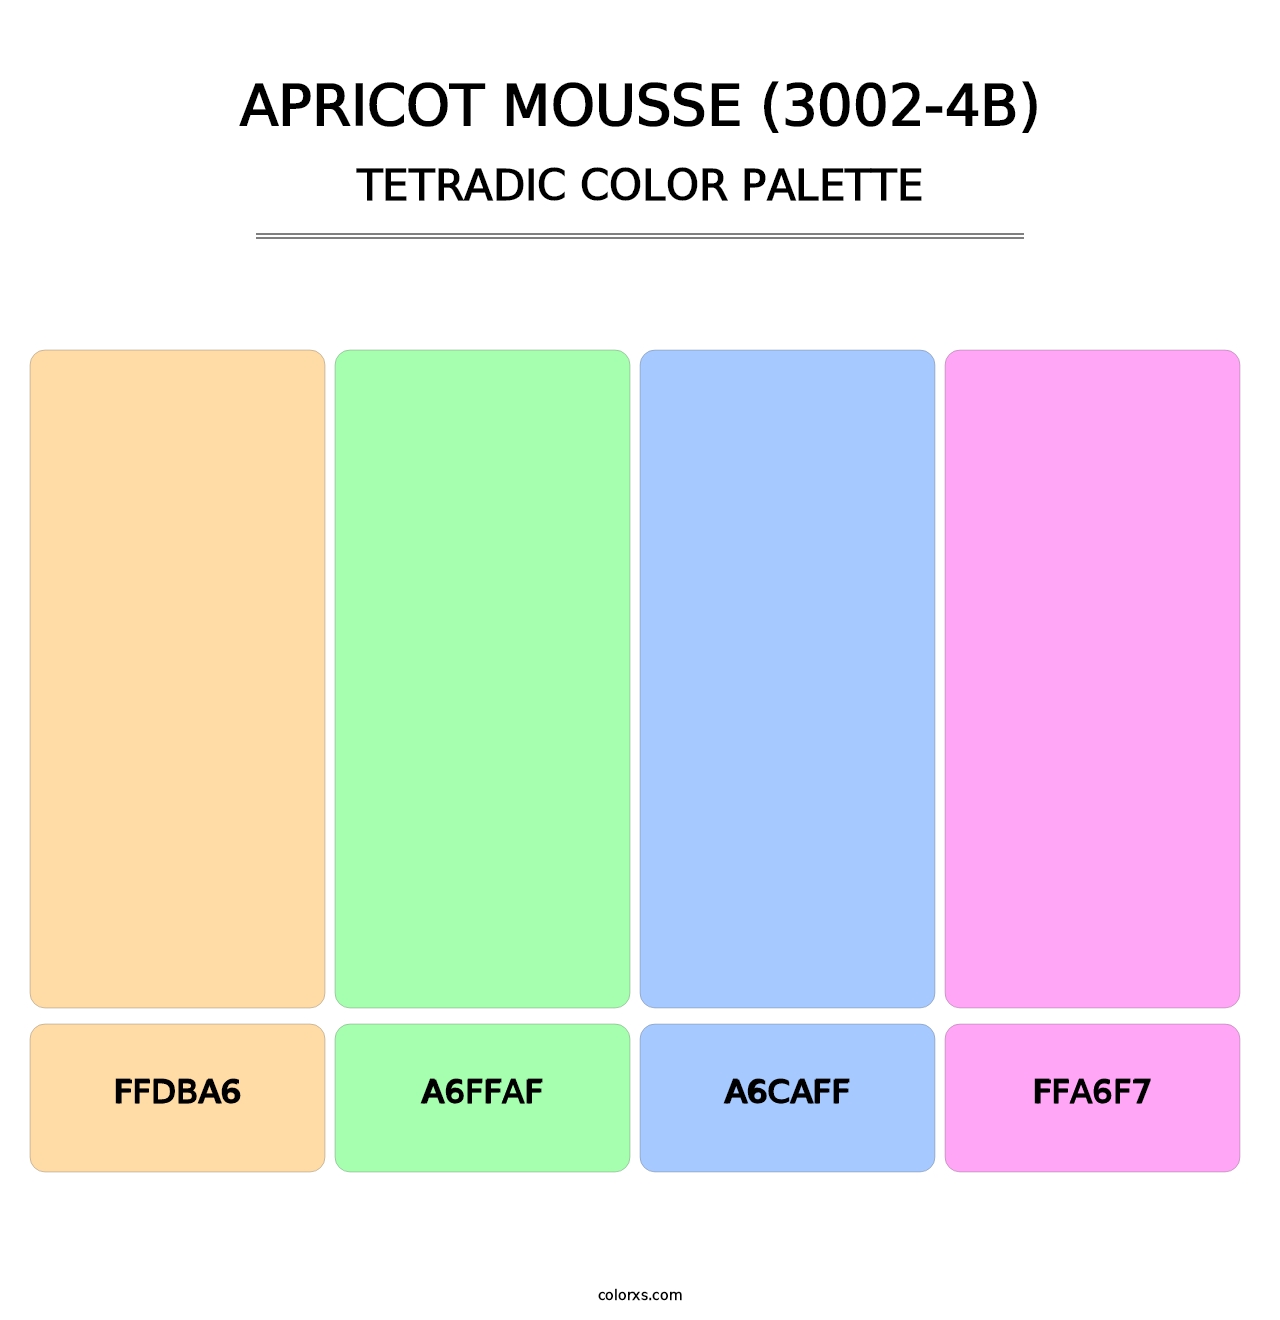 Apricot Mousse (3002-4B) - Tetradic Color Palette